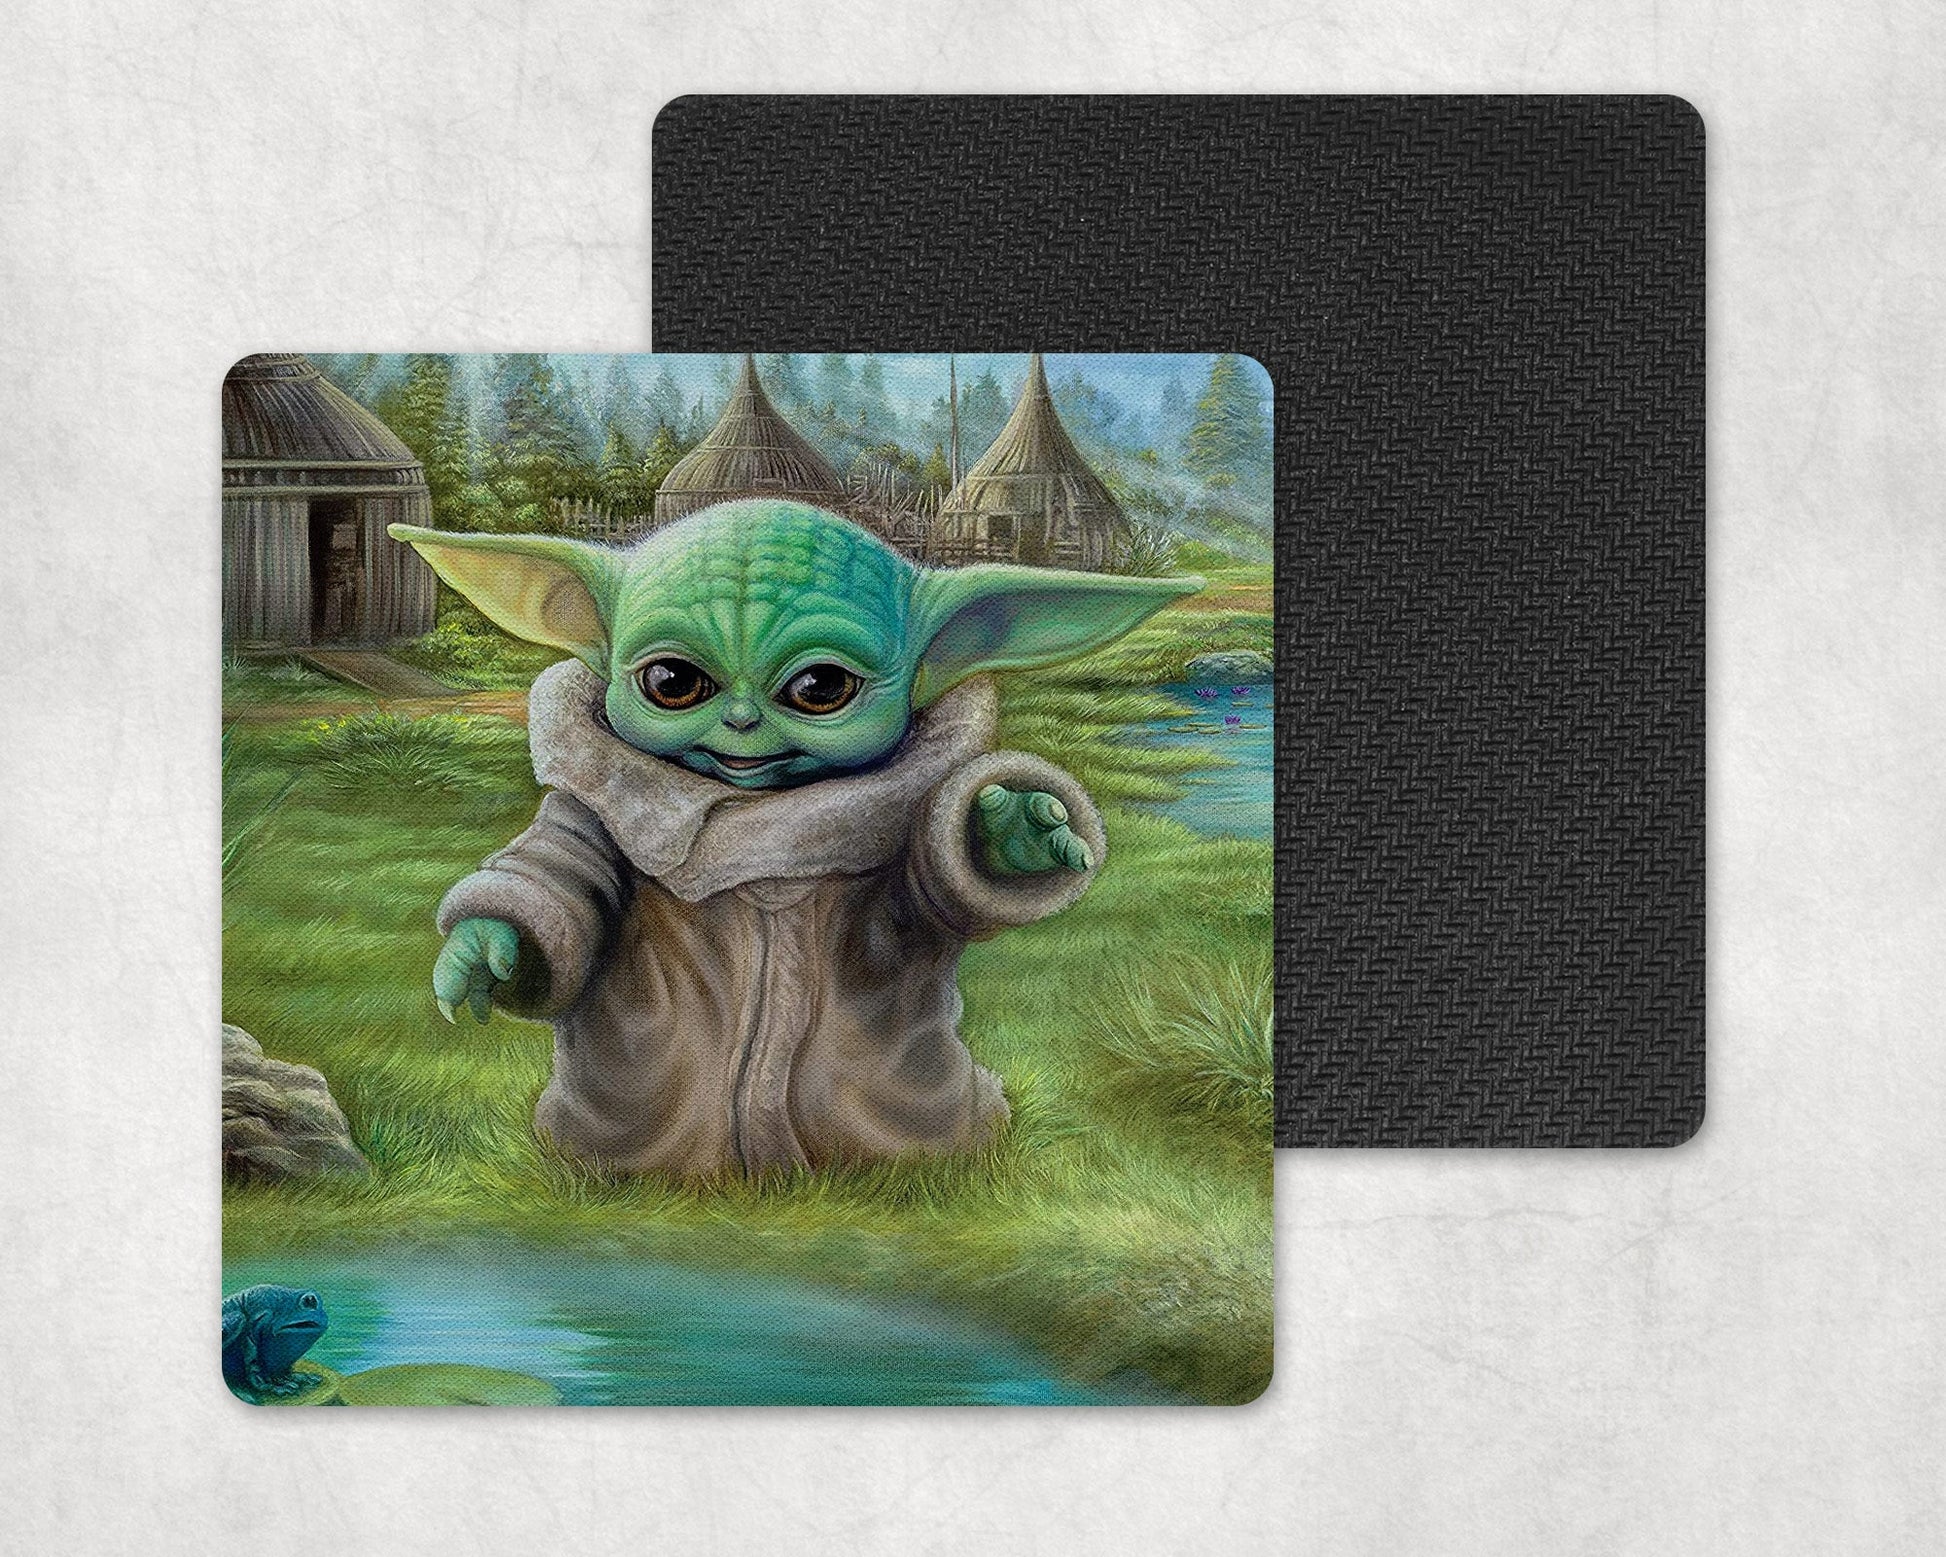 Home Coaster Set - Baby Yoda